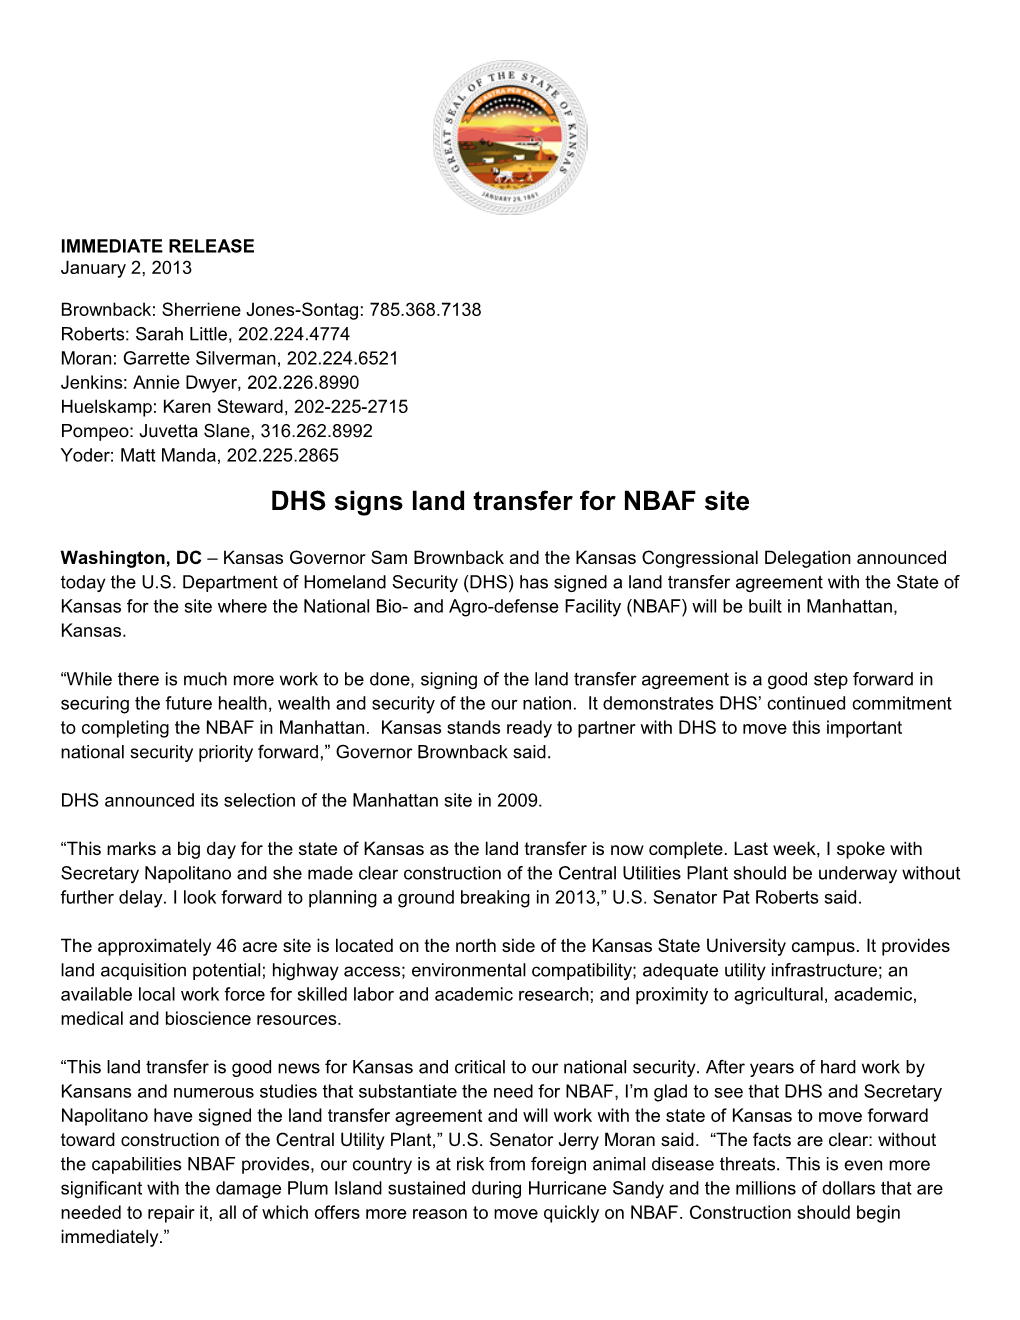 DHS Signs Land Transfer for NBAF Site